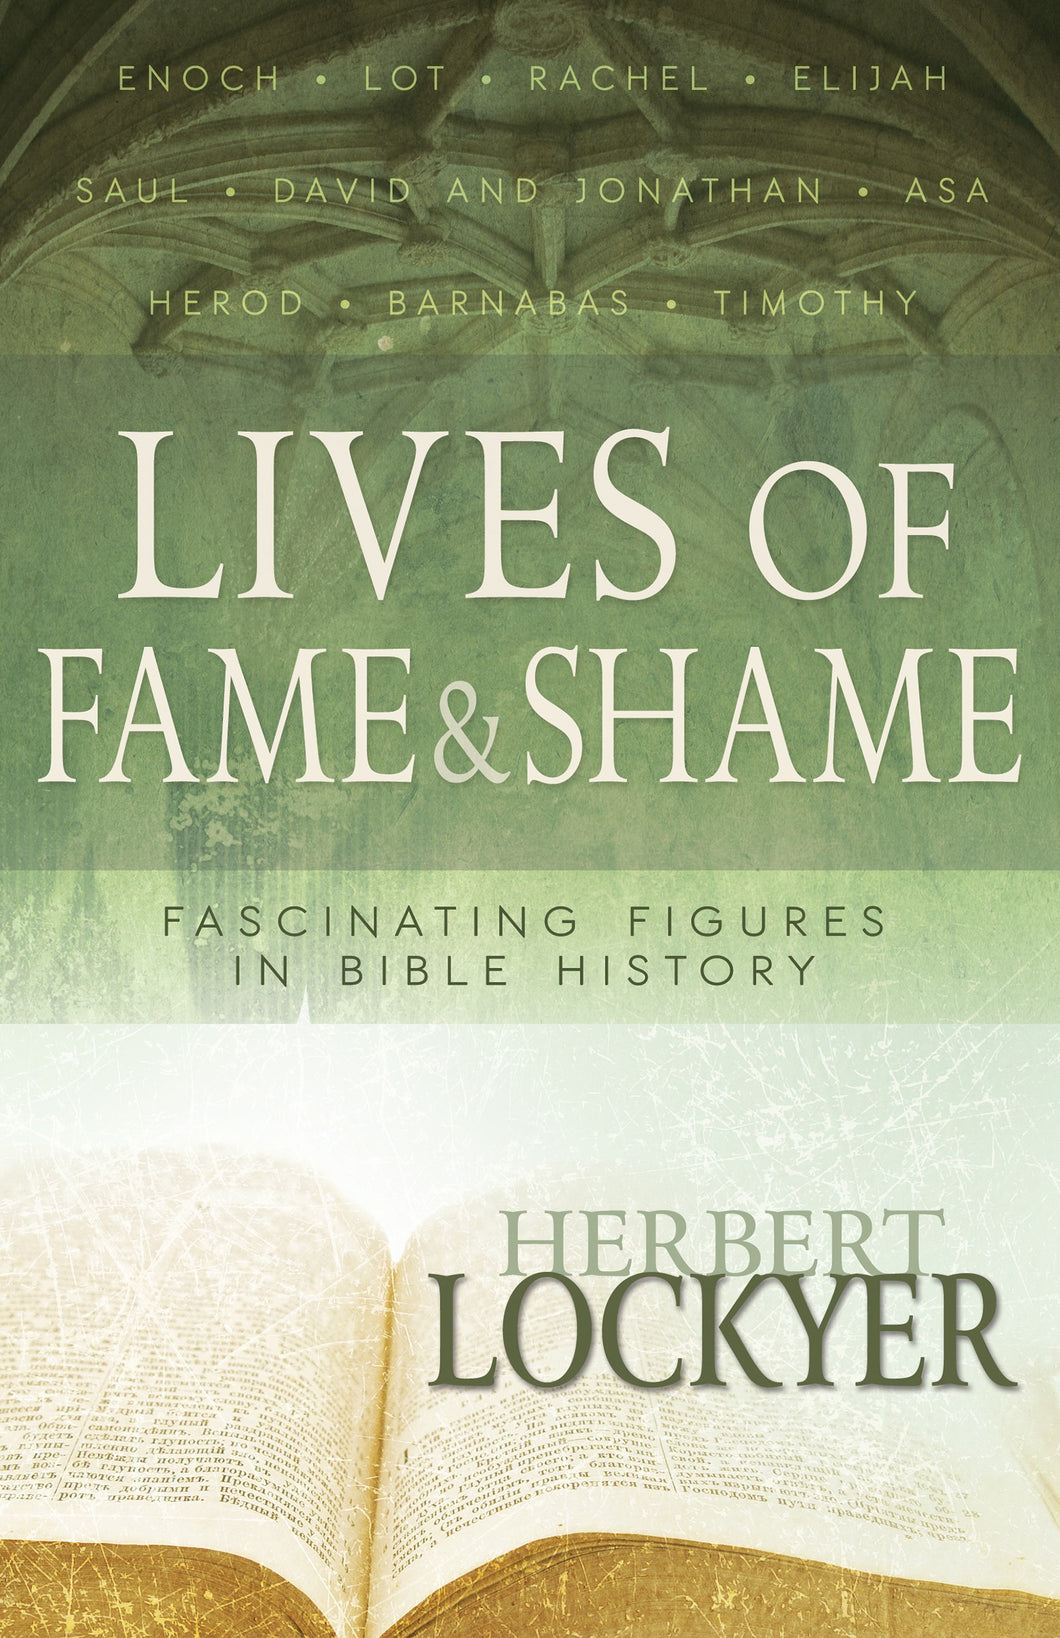 Lives Of Fame & Shame: Fascinating Figures in Bible History